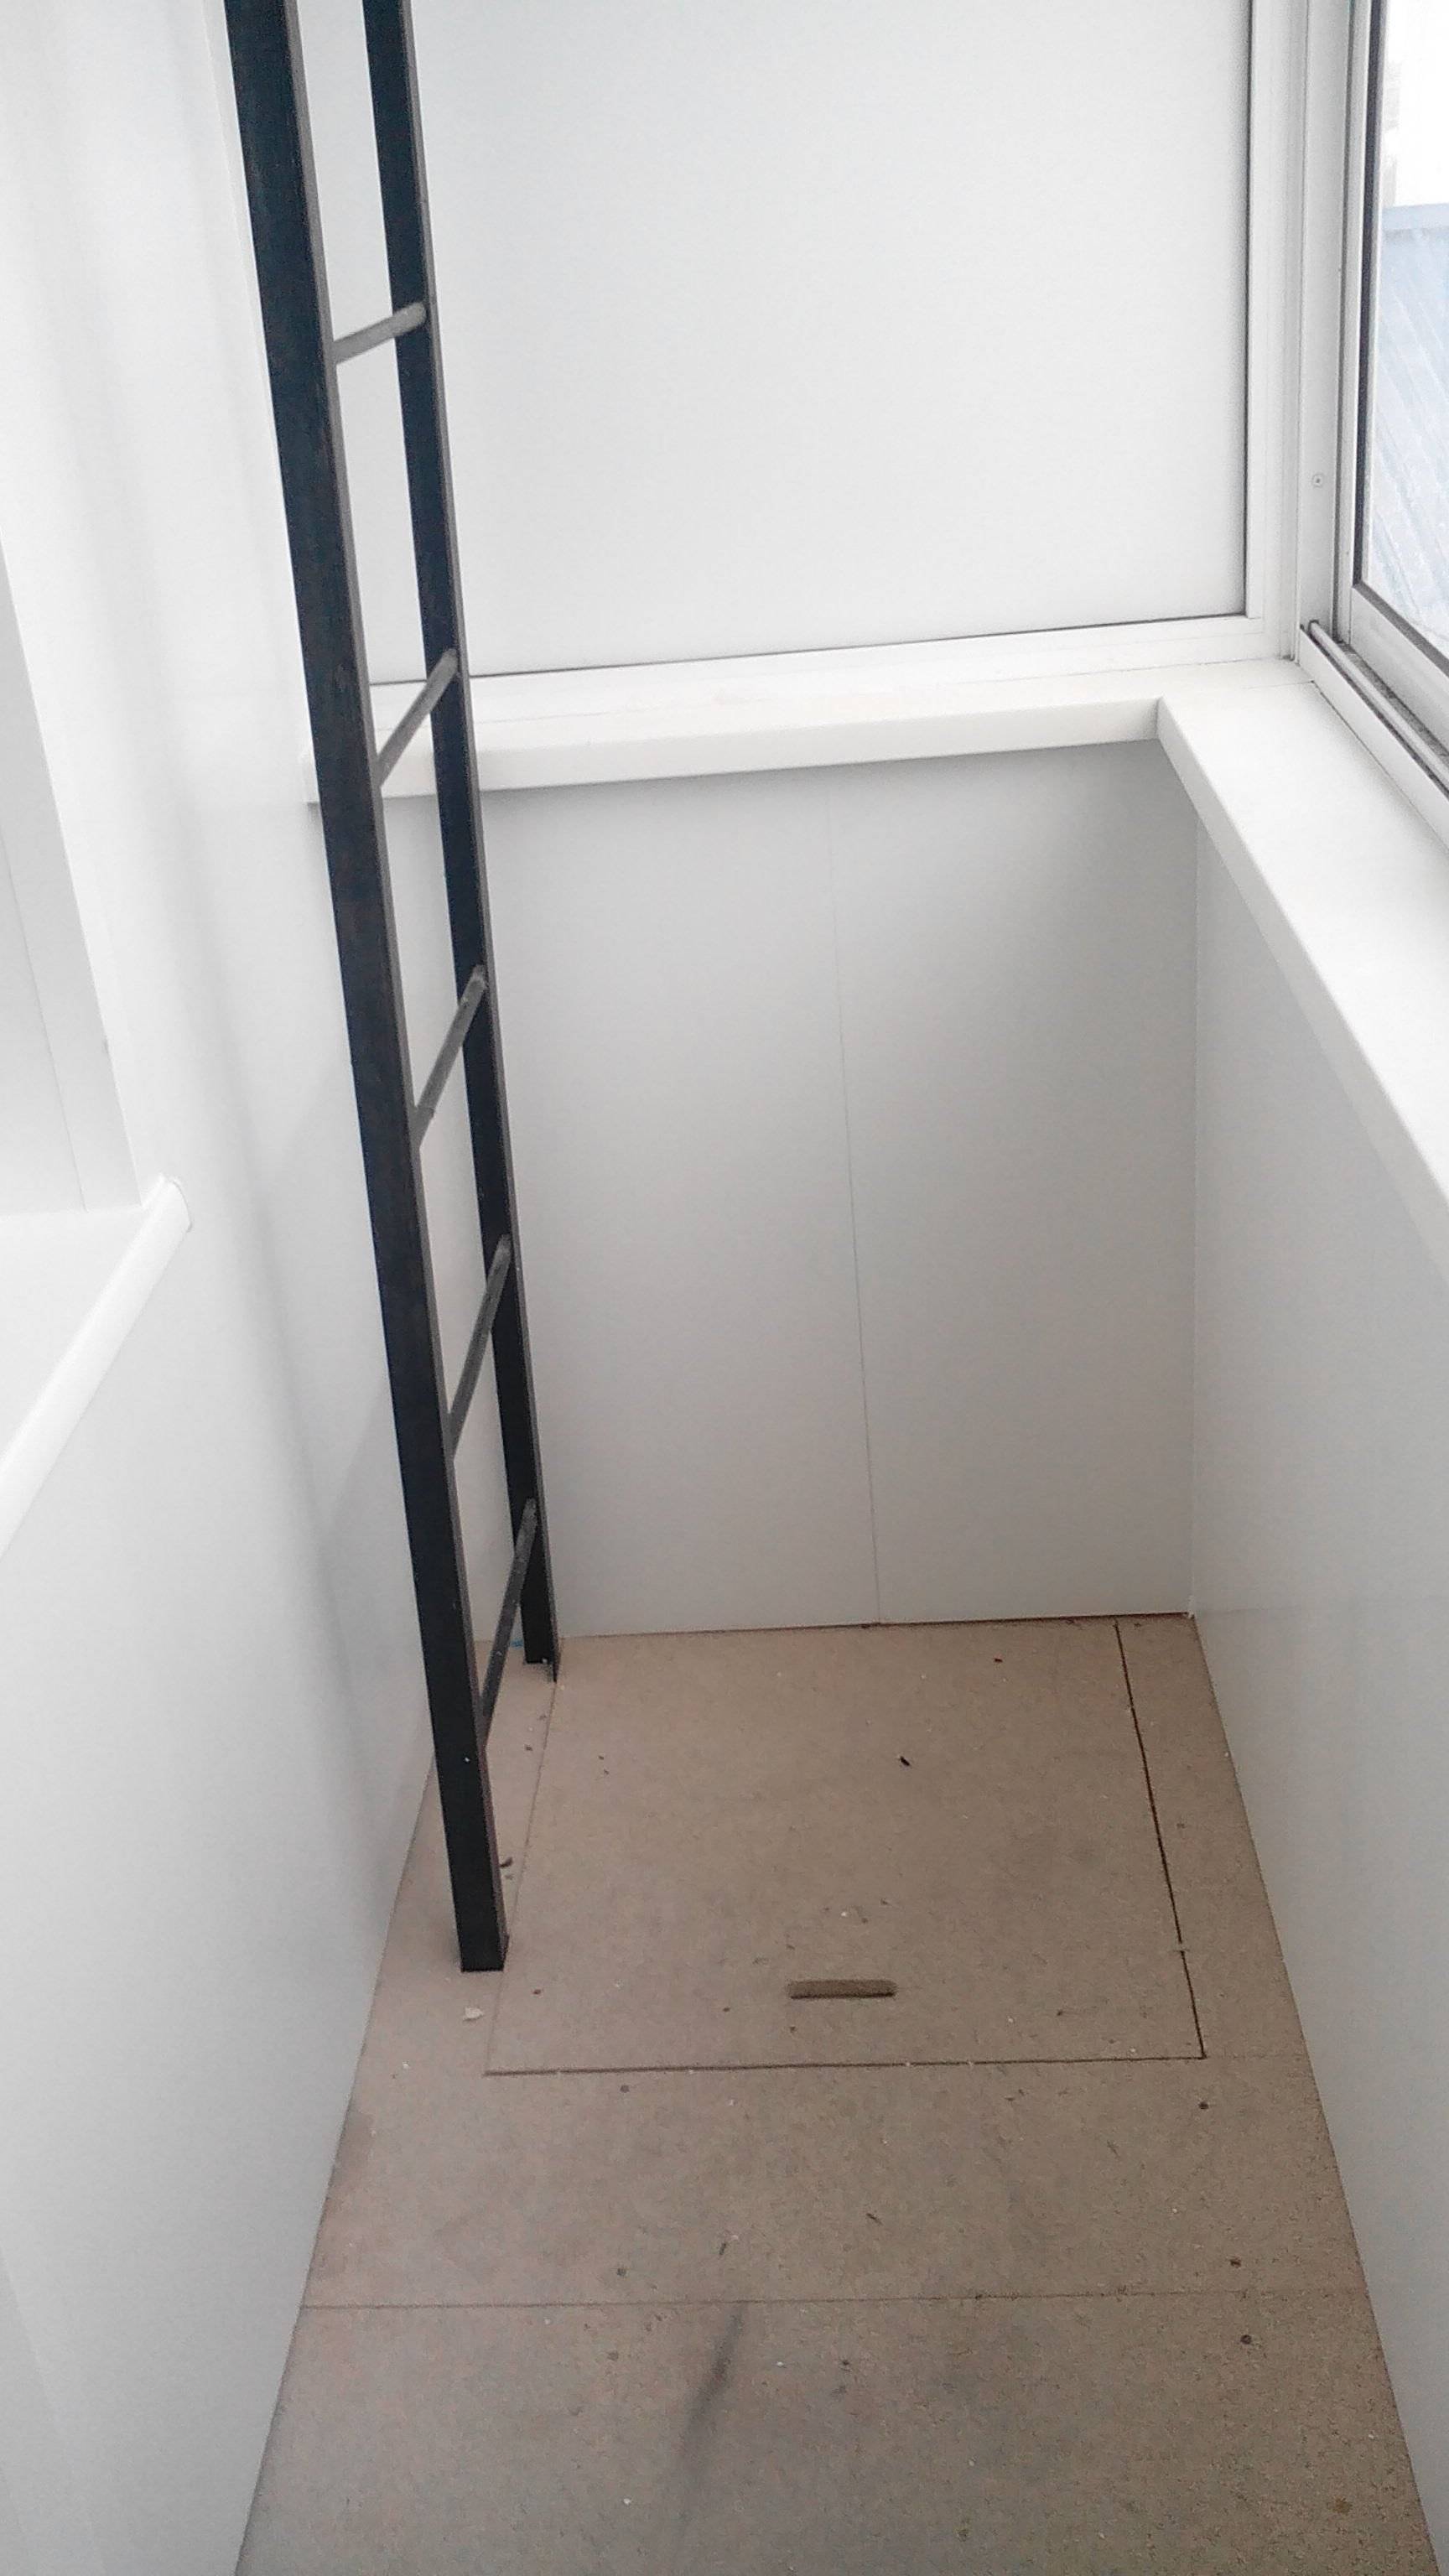 Эвакуационная лестница на лоджии - зачем она нужна и можно ли ее убрать